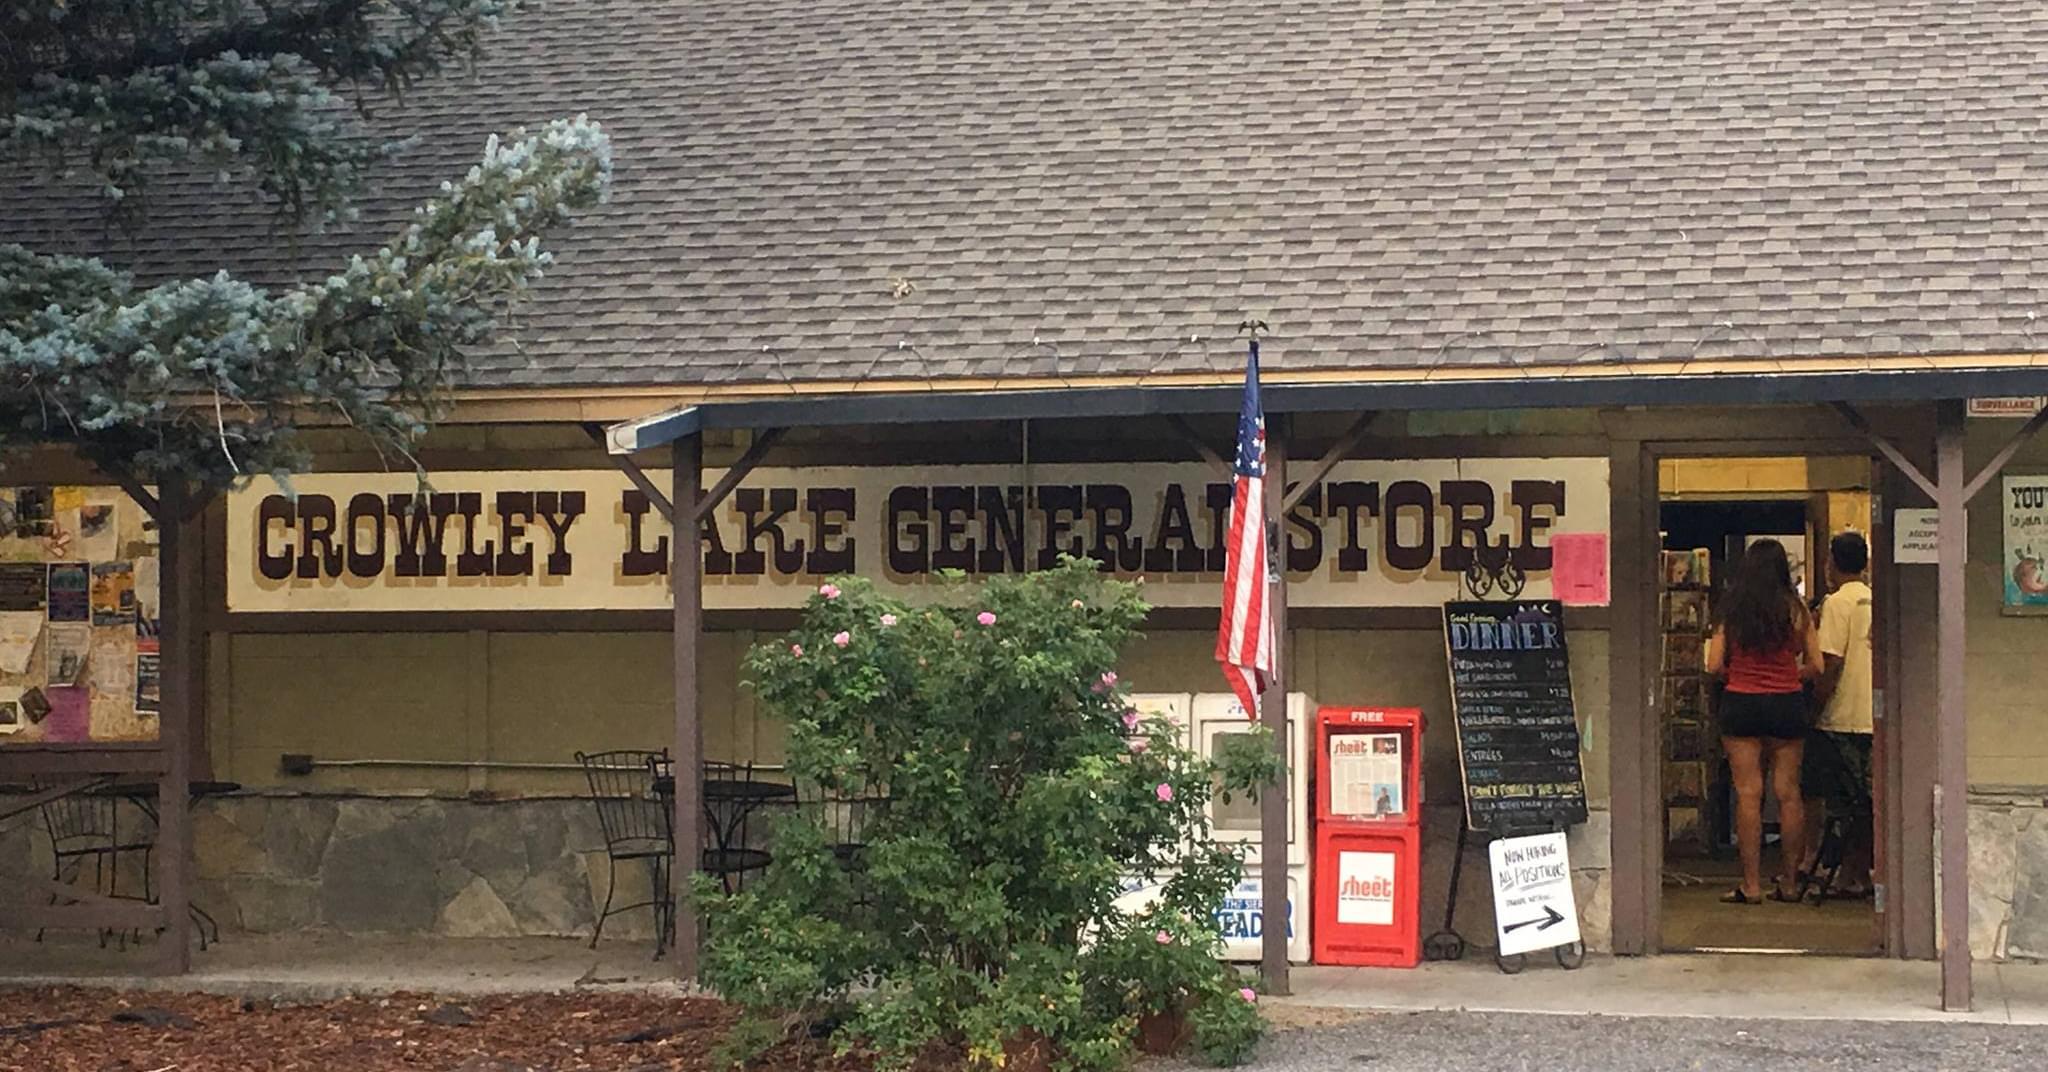 Pet Friendly Crowley Lake General Store